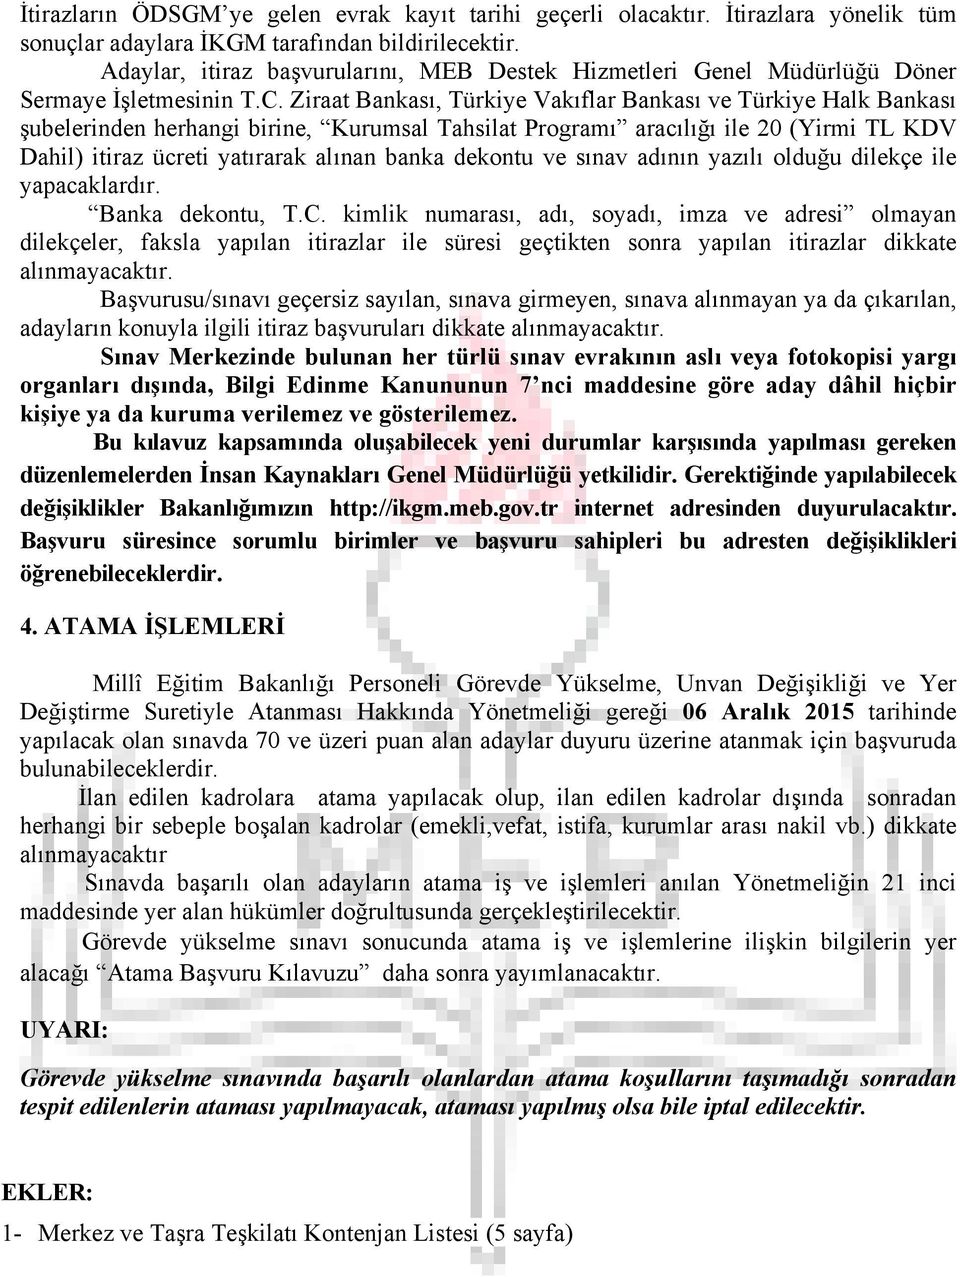 Ziraat Bankası, Türkiye Vakıflar Bankası ve Türkiye Halk Bankası şubelerinden herhangi birine, Kurumsal Tahsilat Programı aracılığı ile 20 (Yirmi TL KDV Dahil) itiraz ücreti yatırarak alınan banka